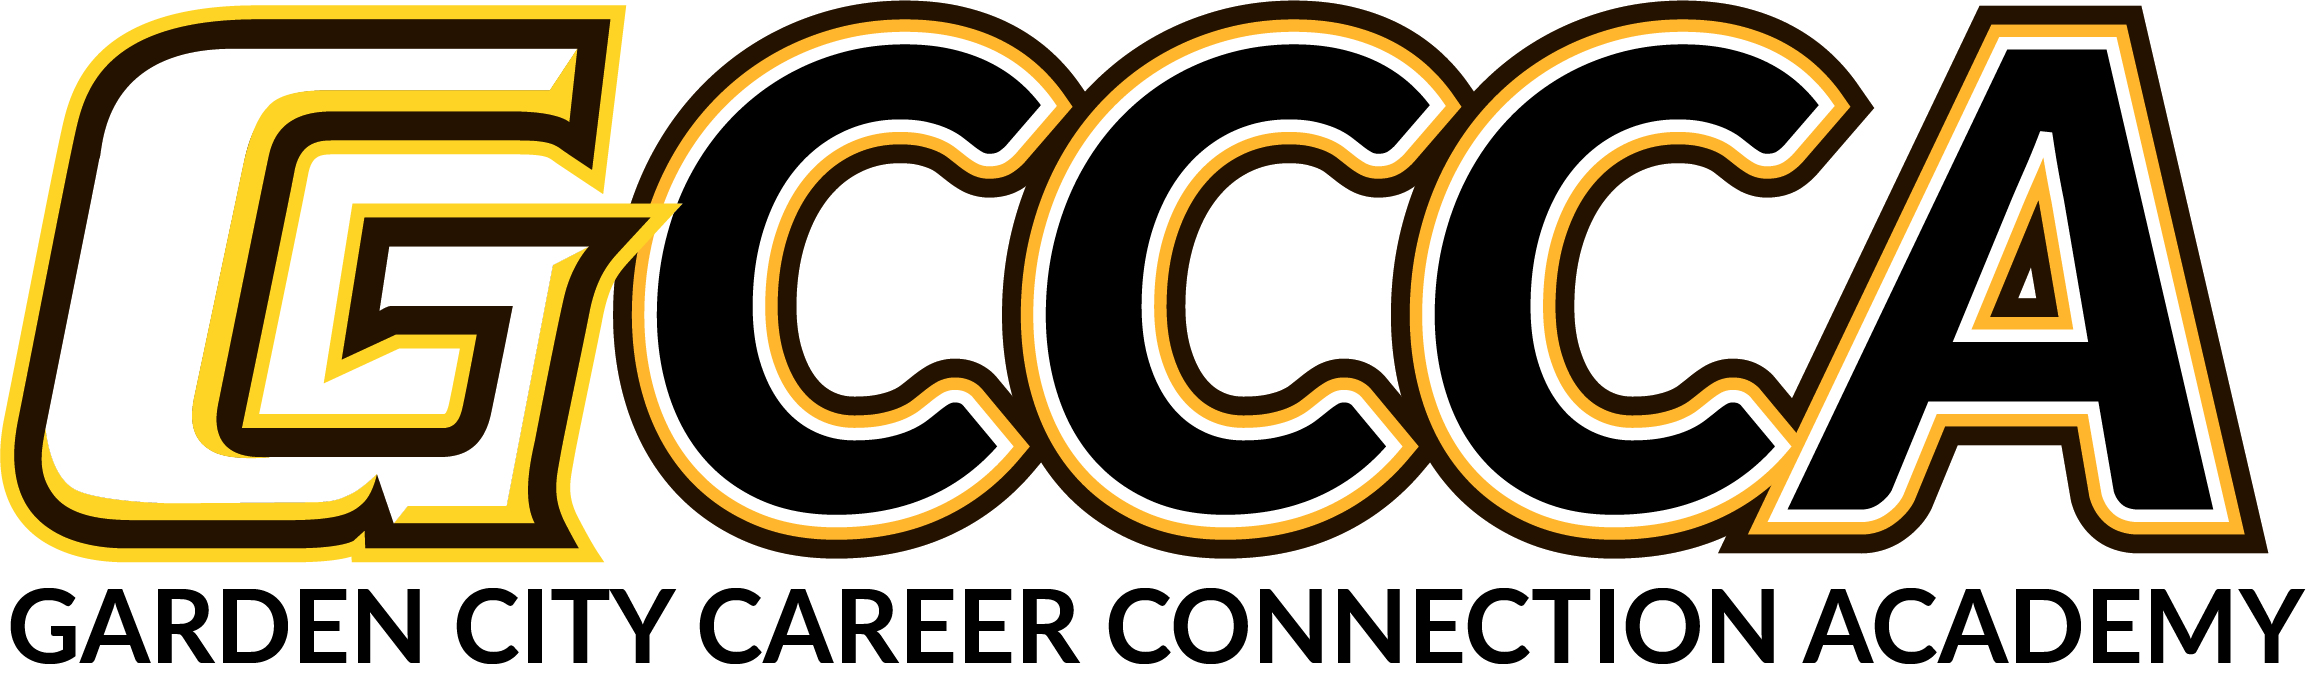 Garden City Career Connection Academy logo